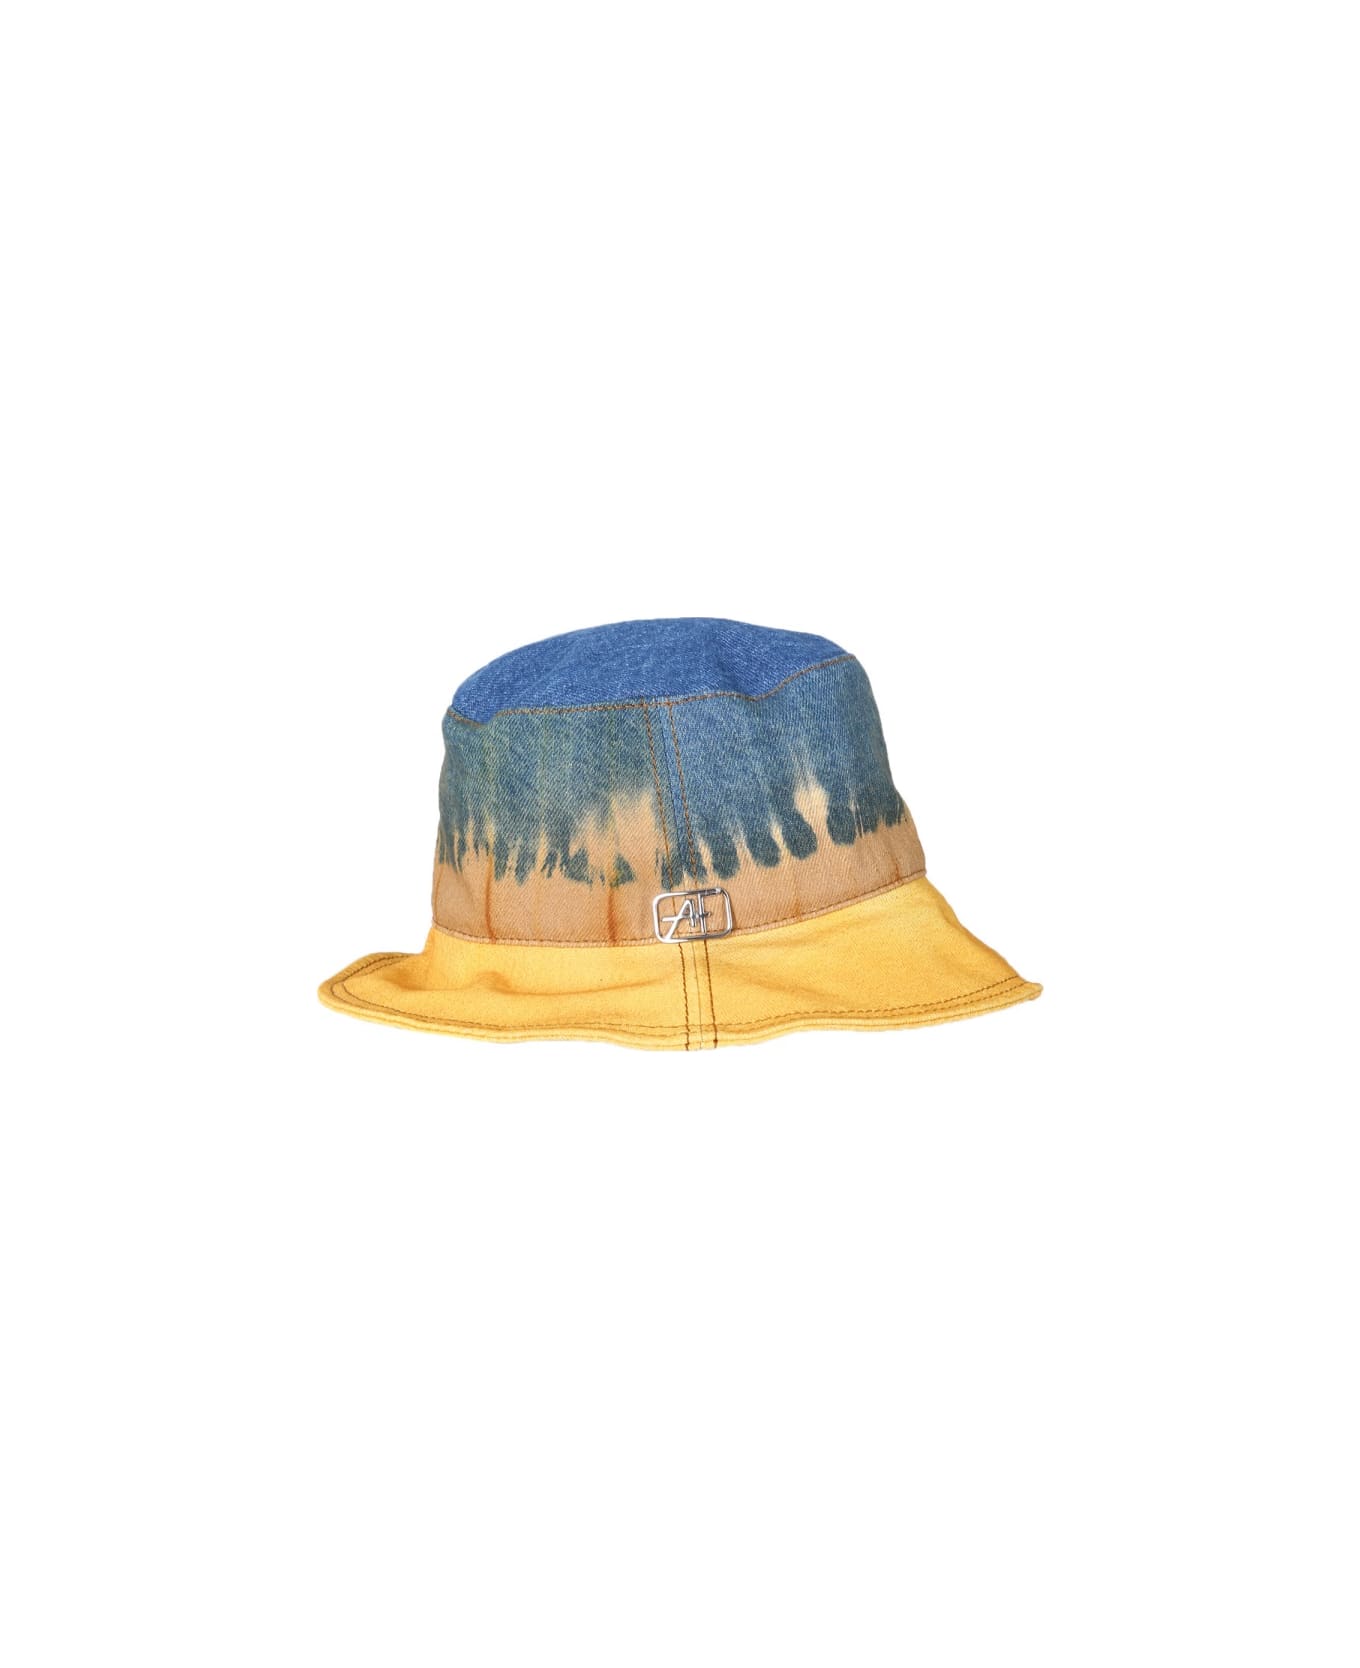 Alberta Ferretti Bucket Hat With Tie Dye Print - MULTICOLOUR 帽子